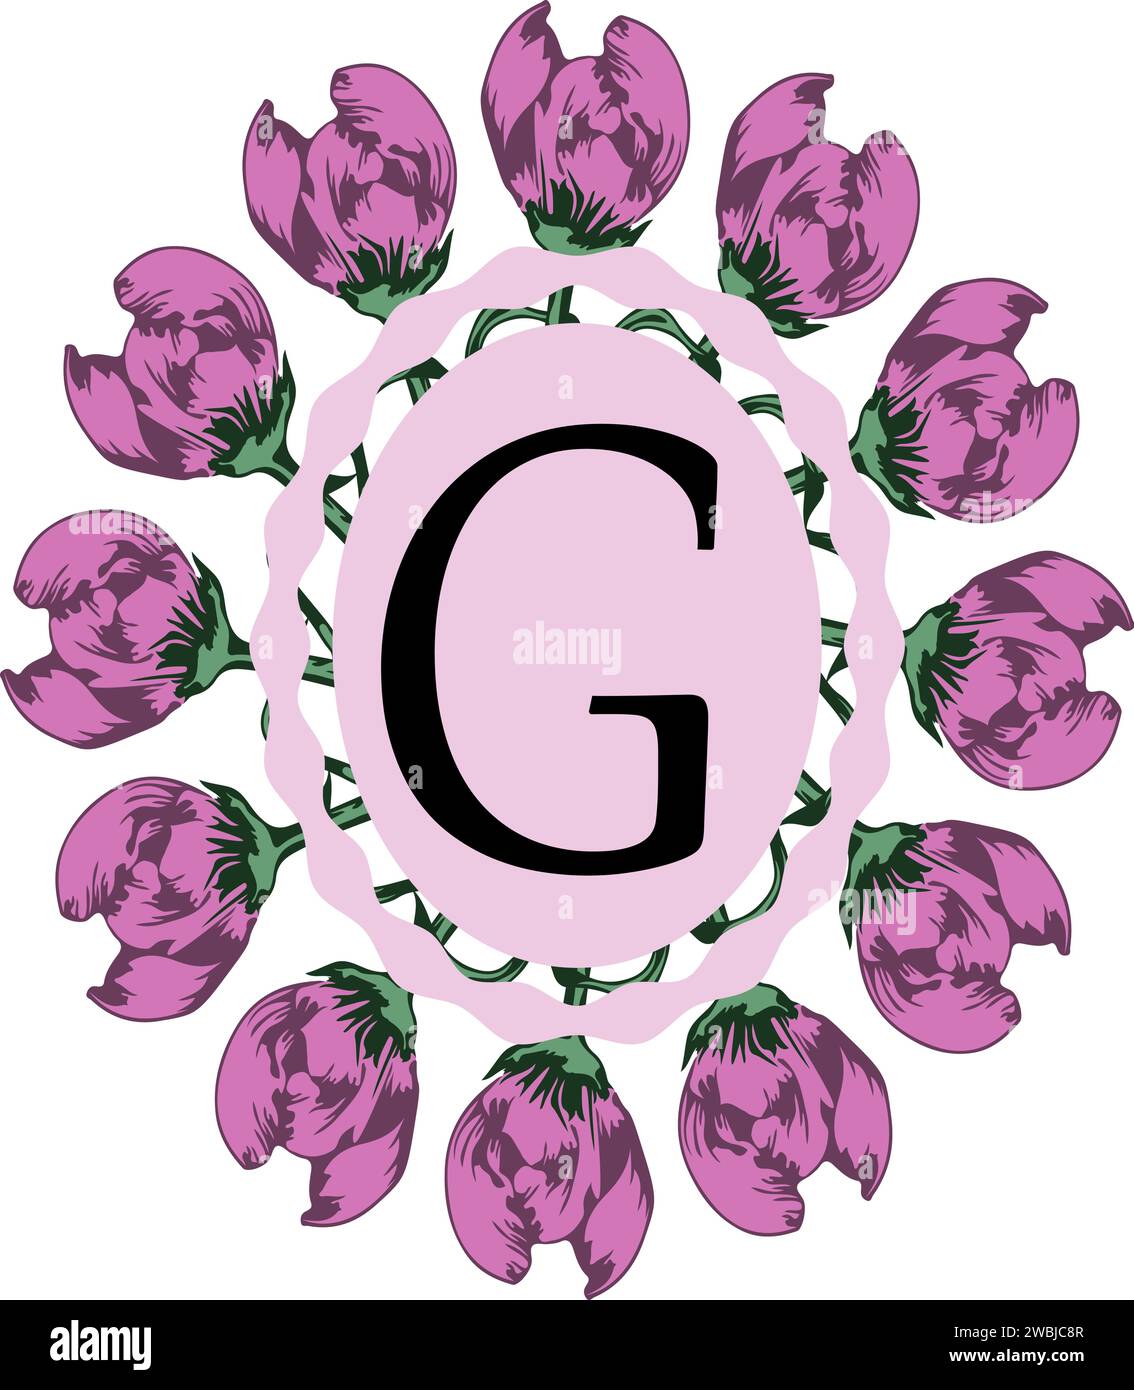 Bellissimo monogramma isolato con lettera maiuscola G, progettato su sfondo trasparente per biglietti di auguri e inviti di nozze Illustrazione Vettoriale